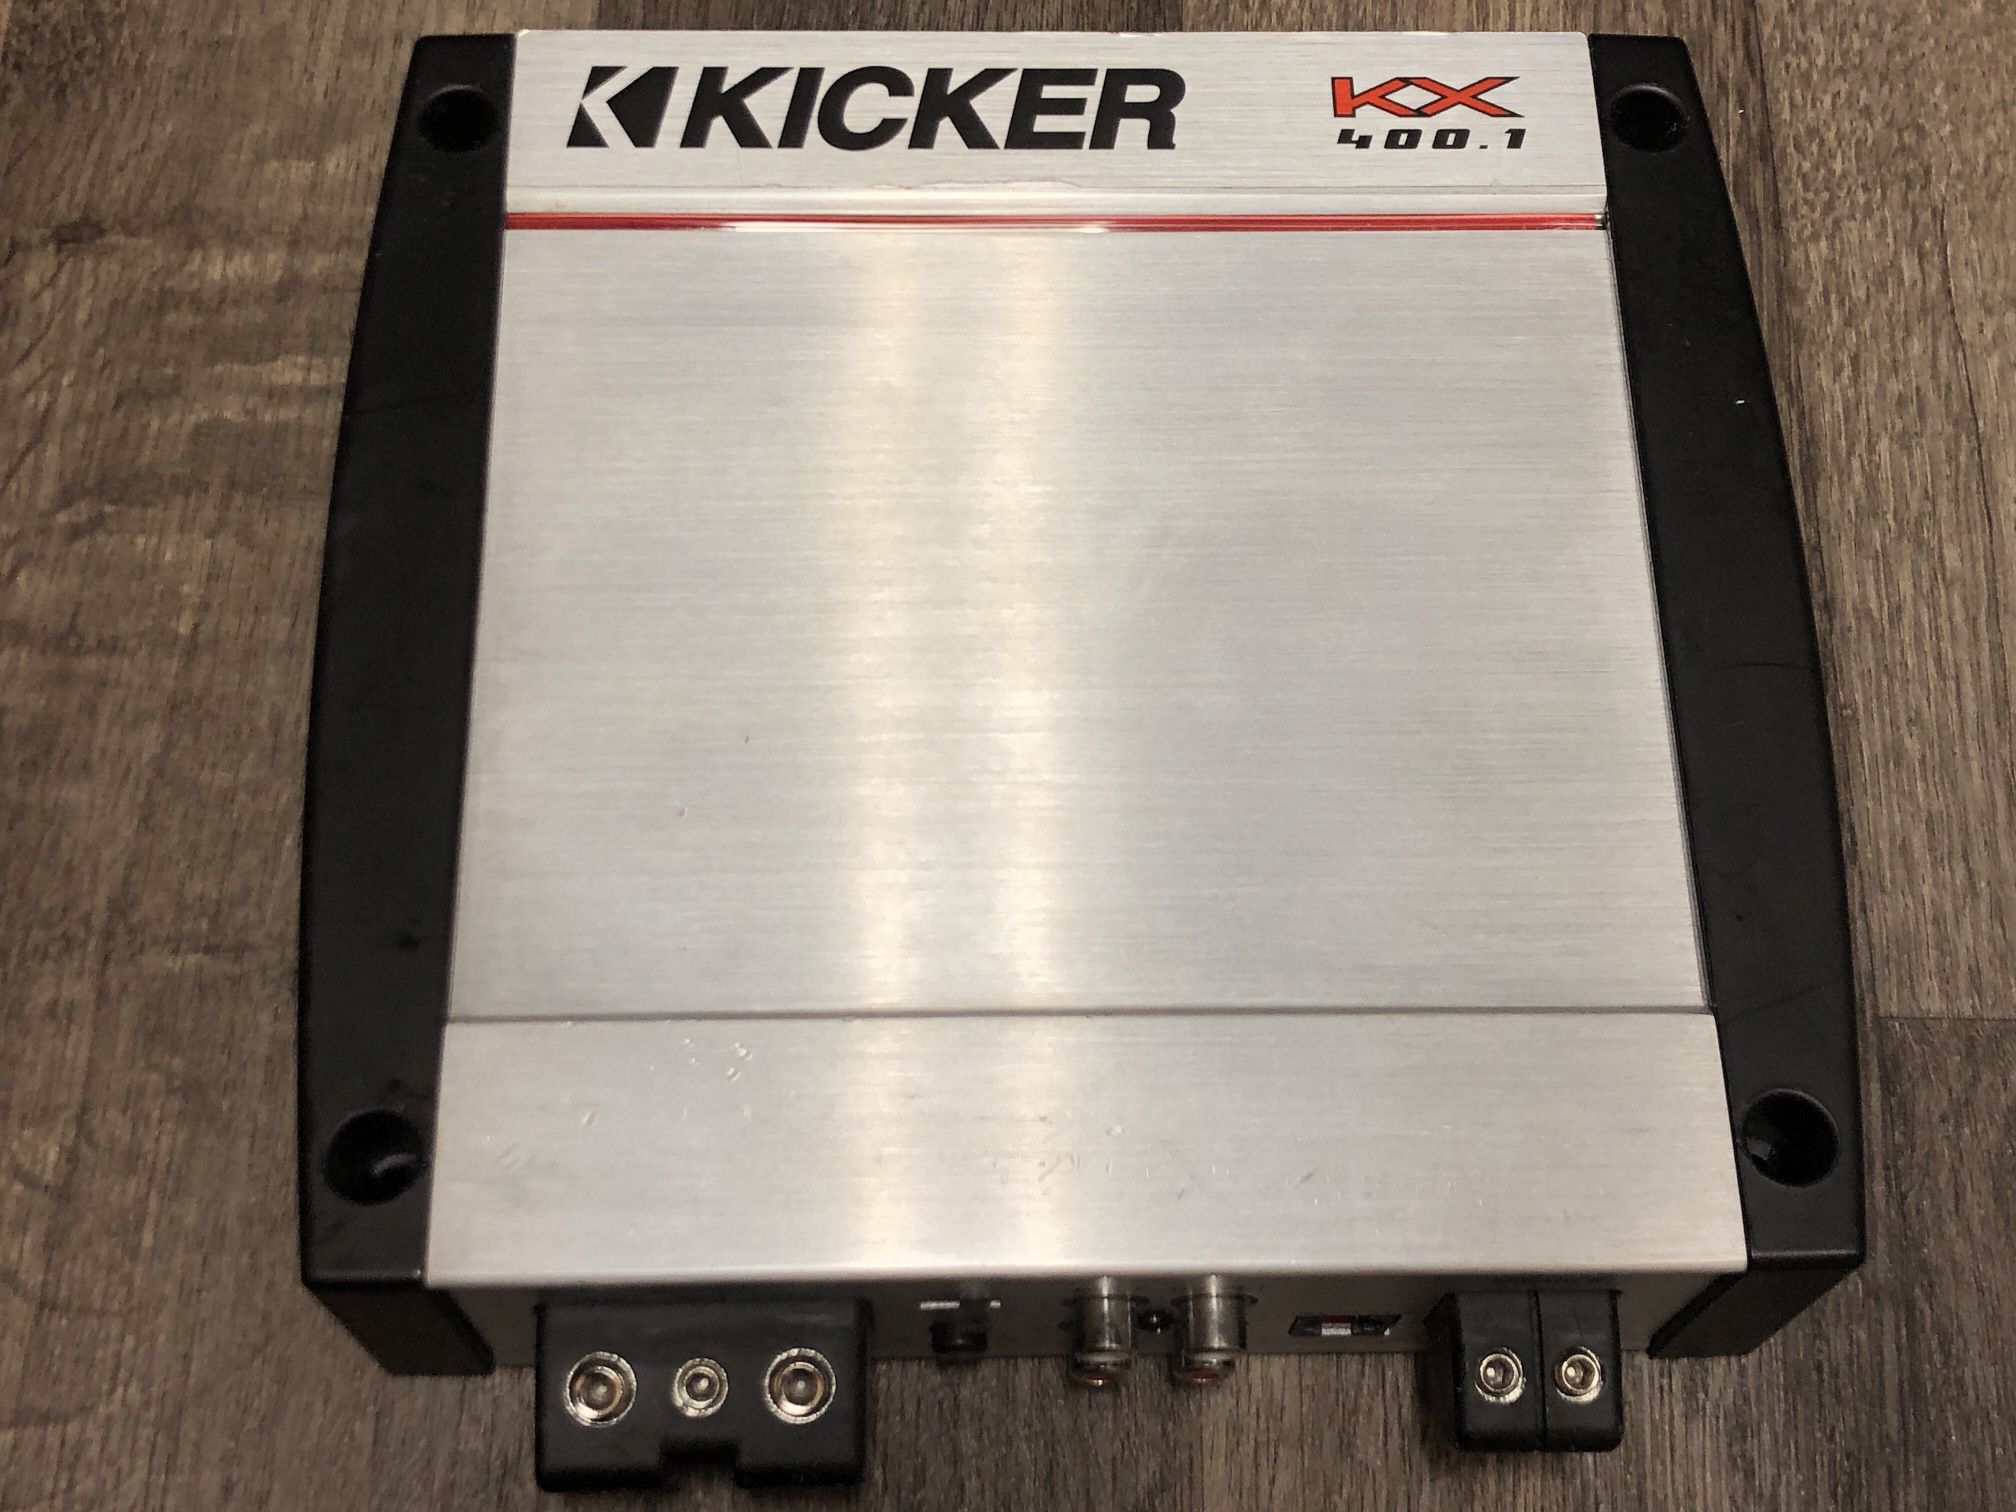 Kicker KX400.1 Amplifier - 400 watts RMS 